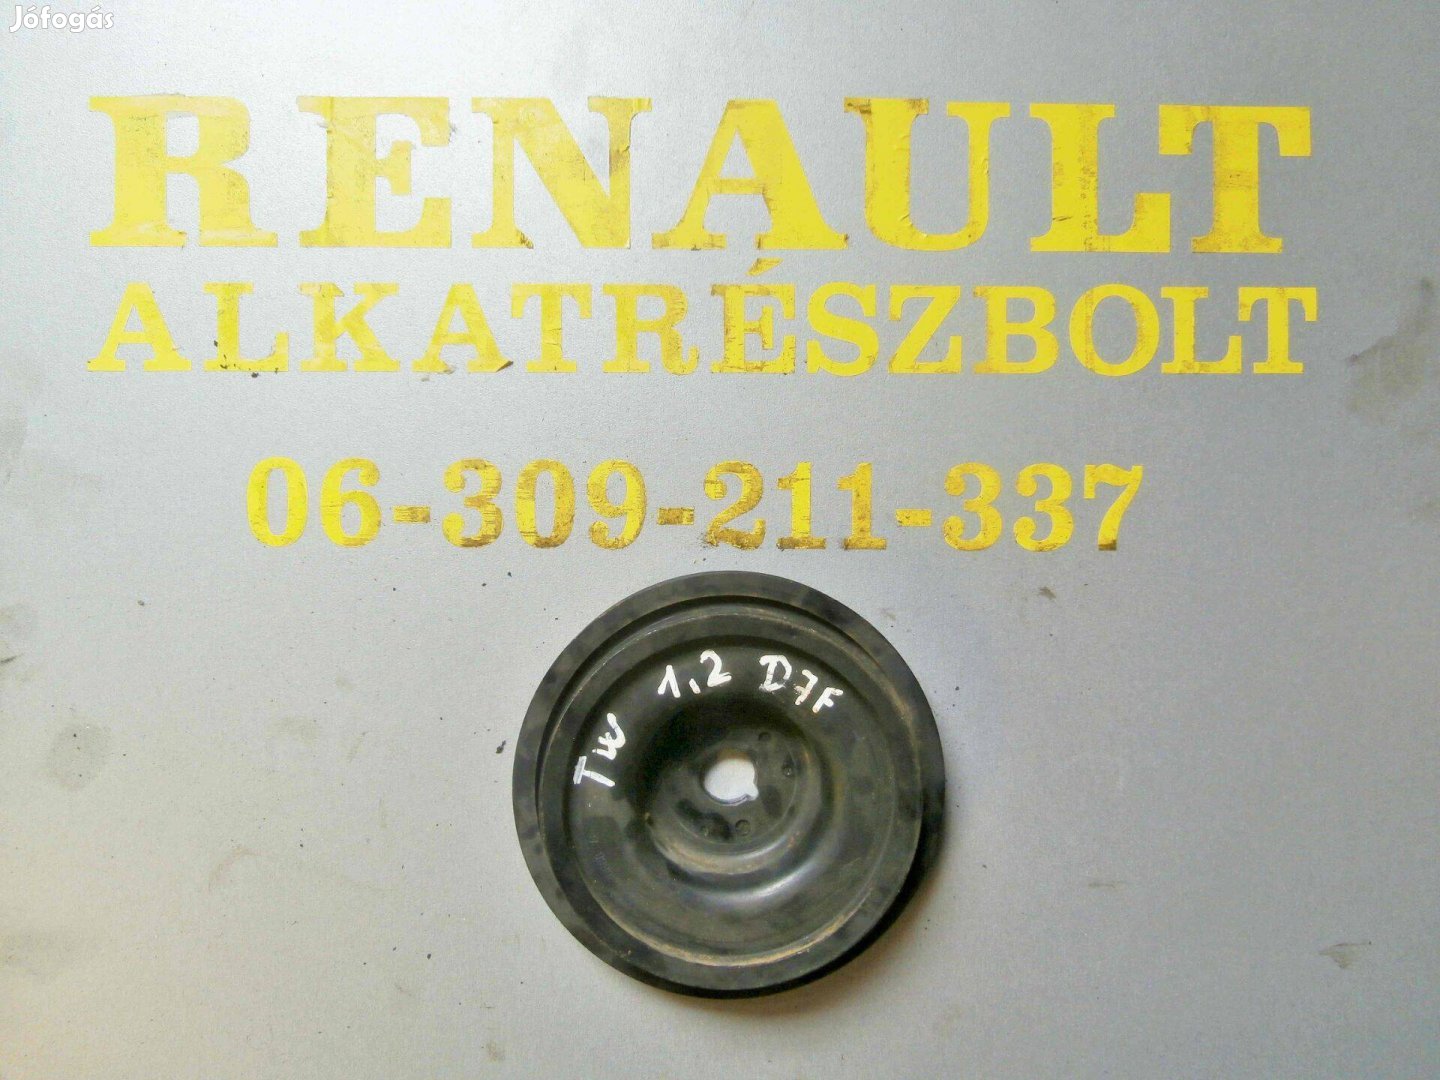 Renault Twingo 1.2 8V D7F 036888 főtengely ékszíjtárcsa